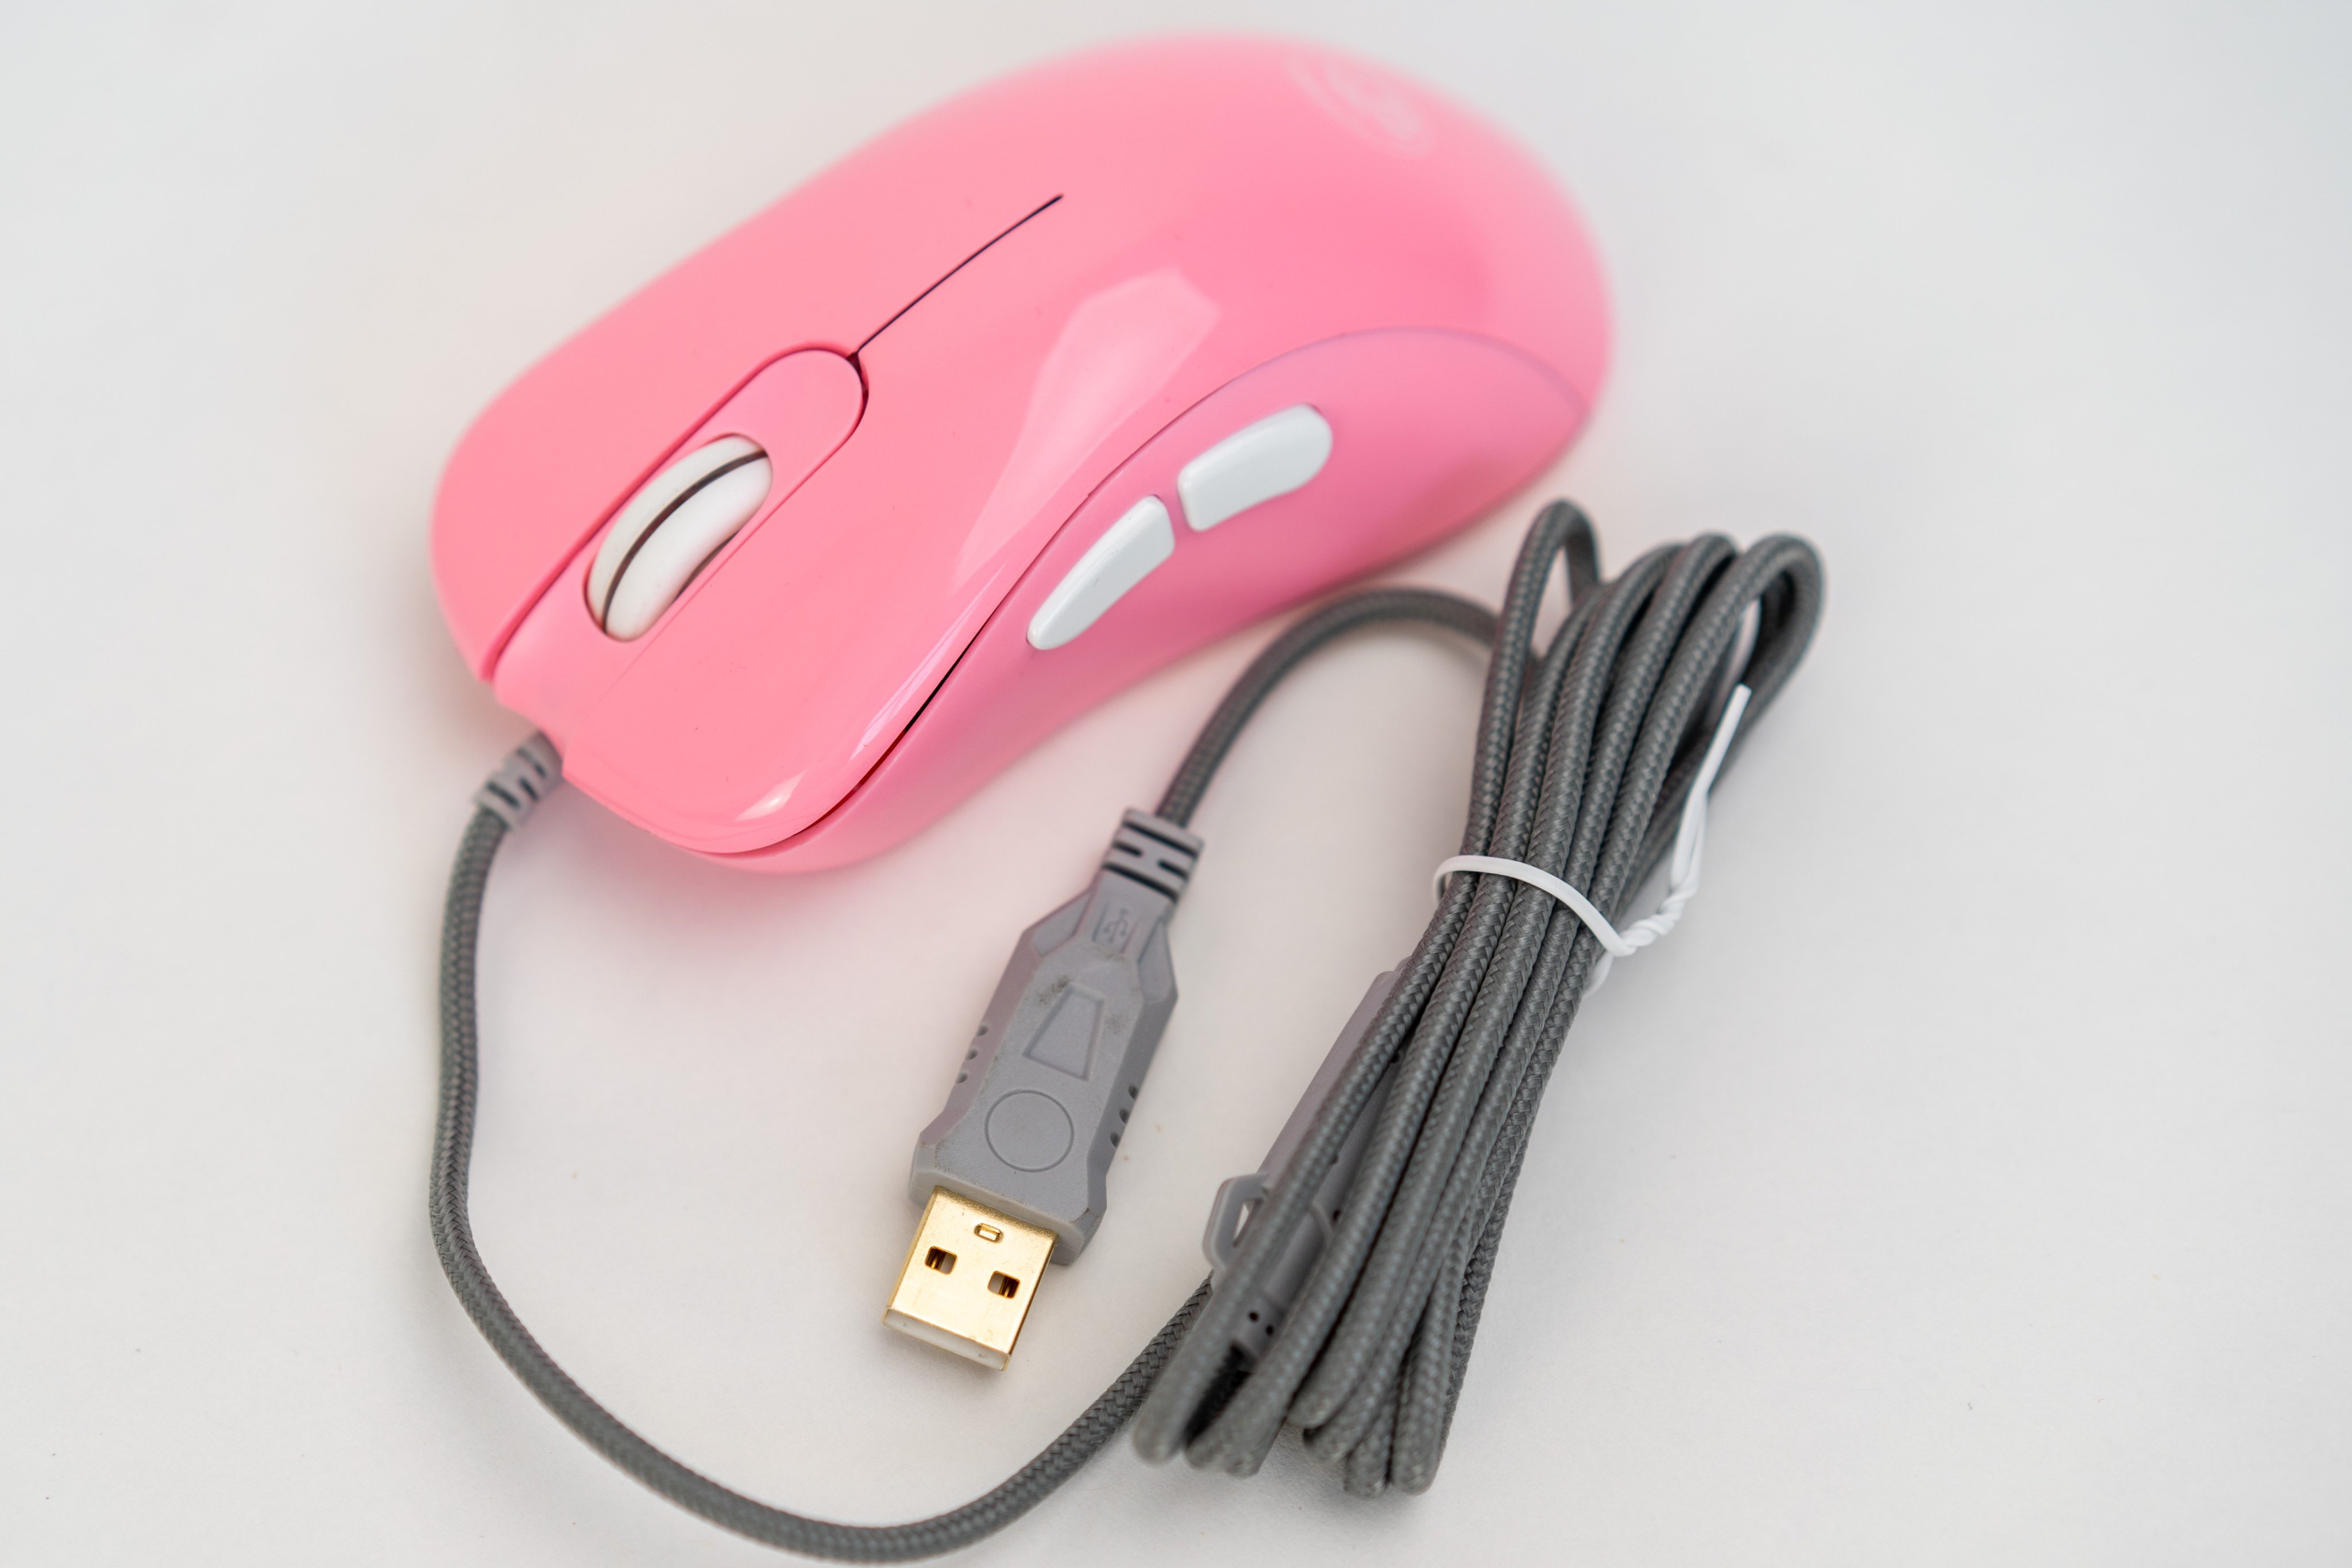 Chuột chơi game E-DRA EM660 FPS Pro Pink - Hàng chính hãng